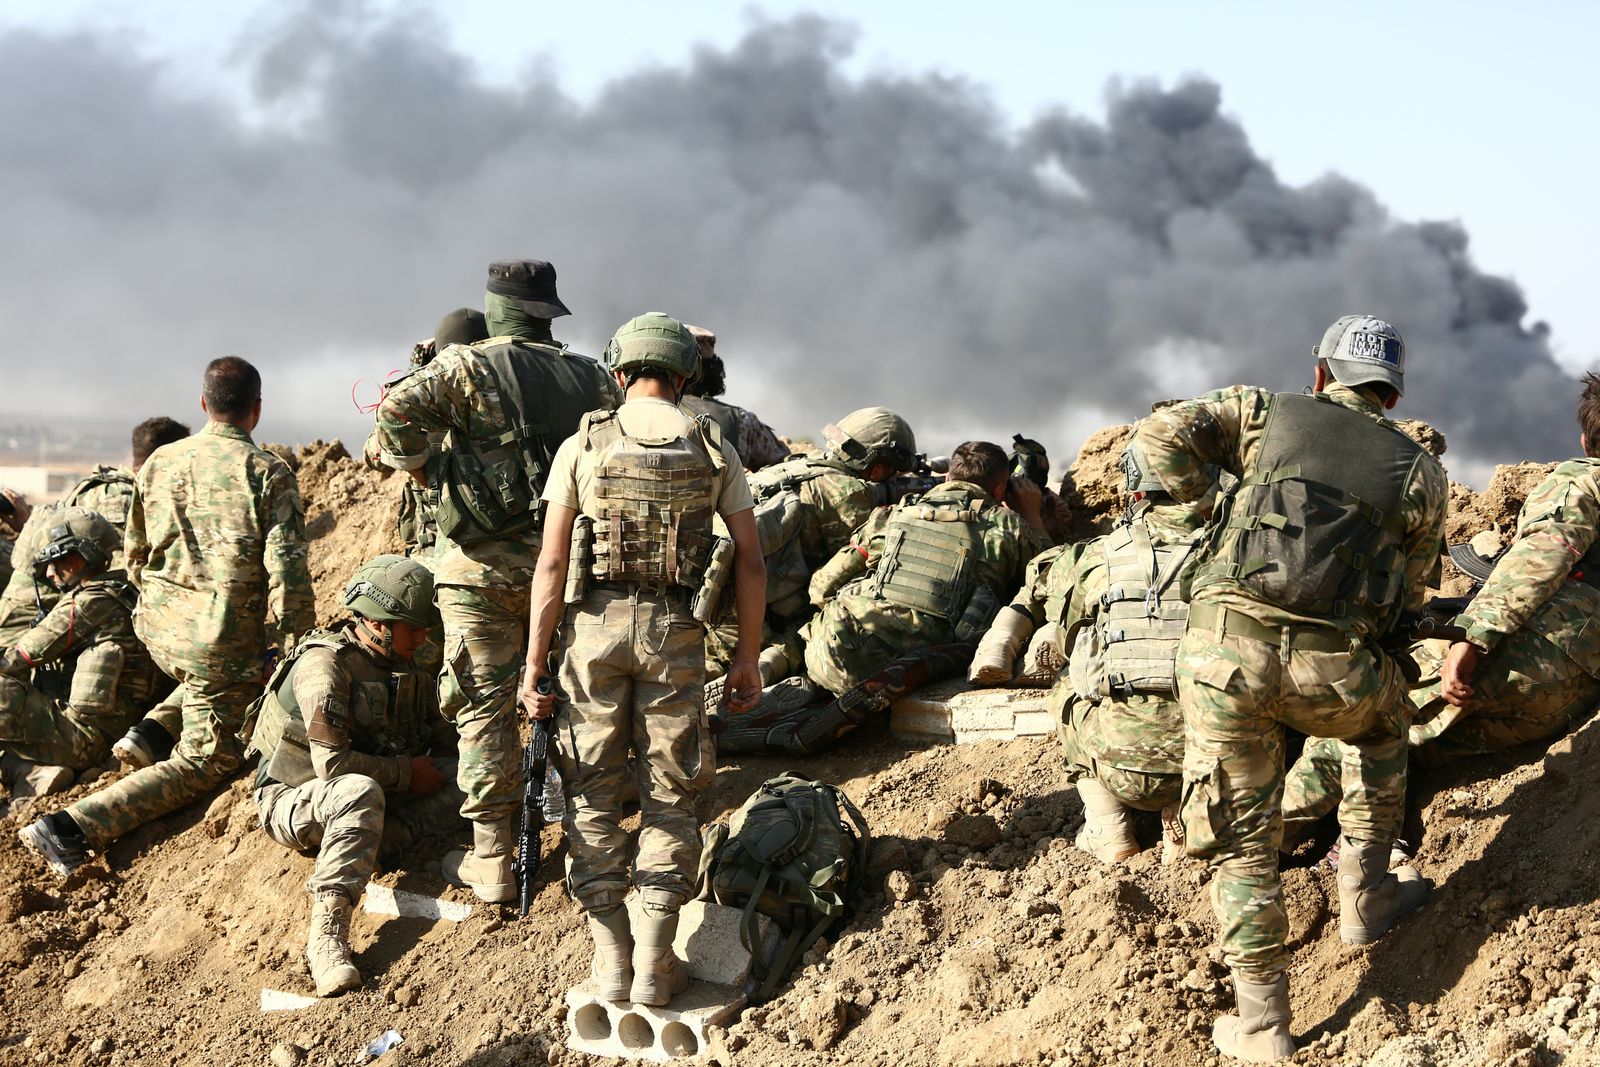 قوات تركية ومقاتلون سوريون يتجمعون خارج رأس العين خلال هجومهم على بلدات حدودية يسيطر عليها الأكراد في شمال شرقي سوريا، 12 أكتوبر 2019  - AFP